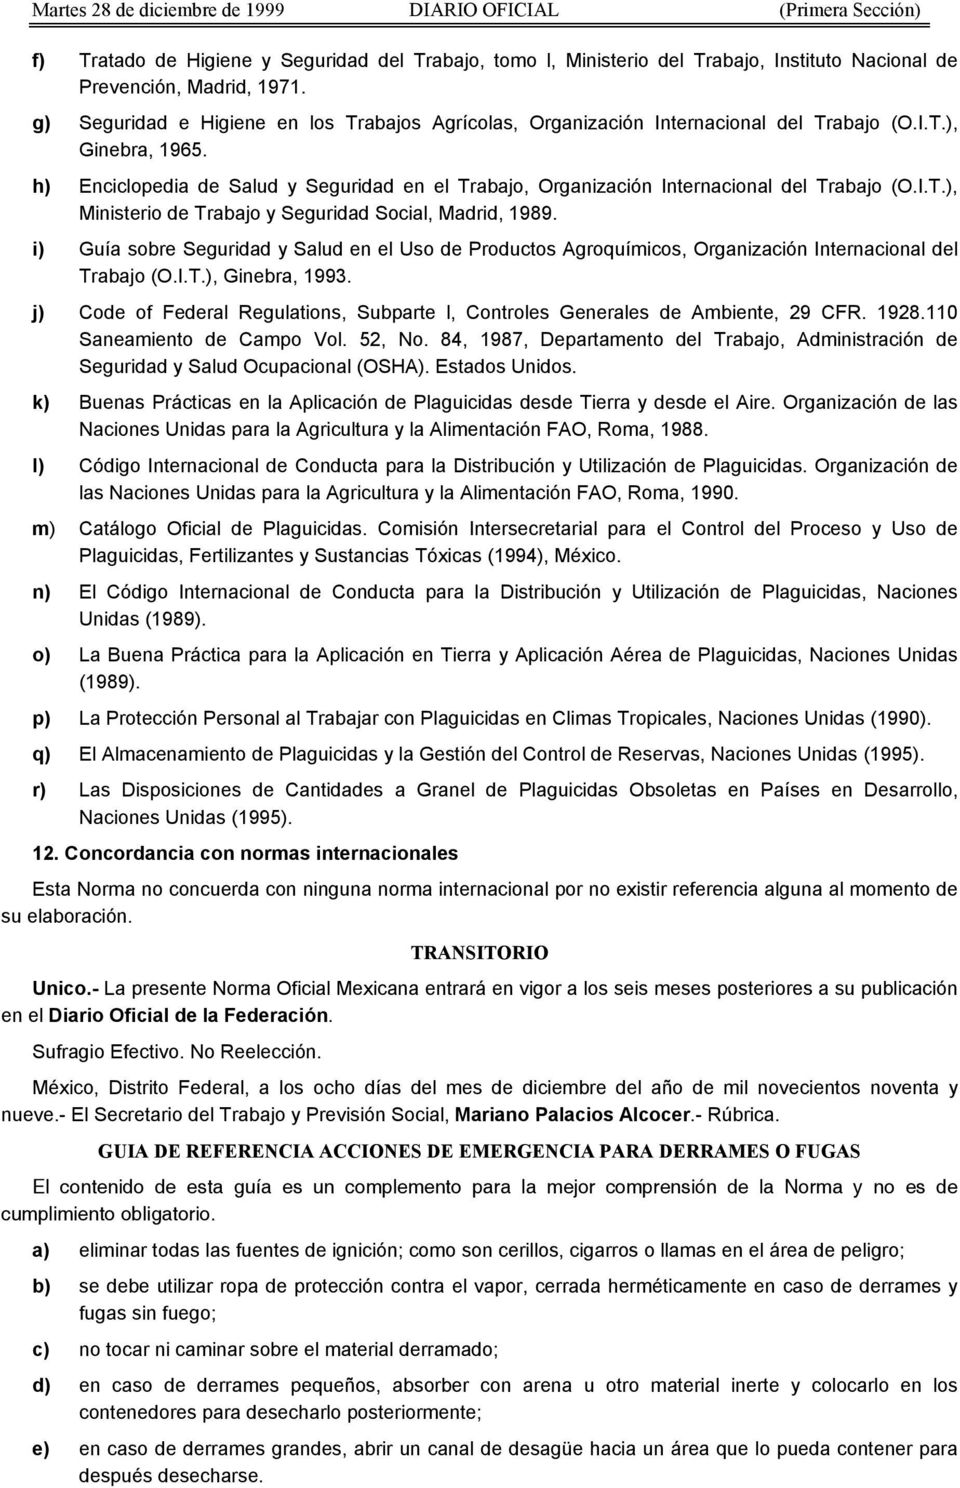 h) Enciclopedia de Salud y Seguridad en el Trabajo, Organización Internacional del Trabajo (O.I.T.), Ministerio de Trabajo y Seguridad Social, Madrid, 1989.